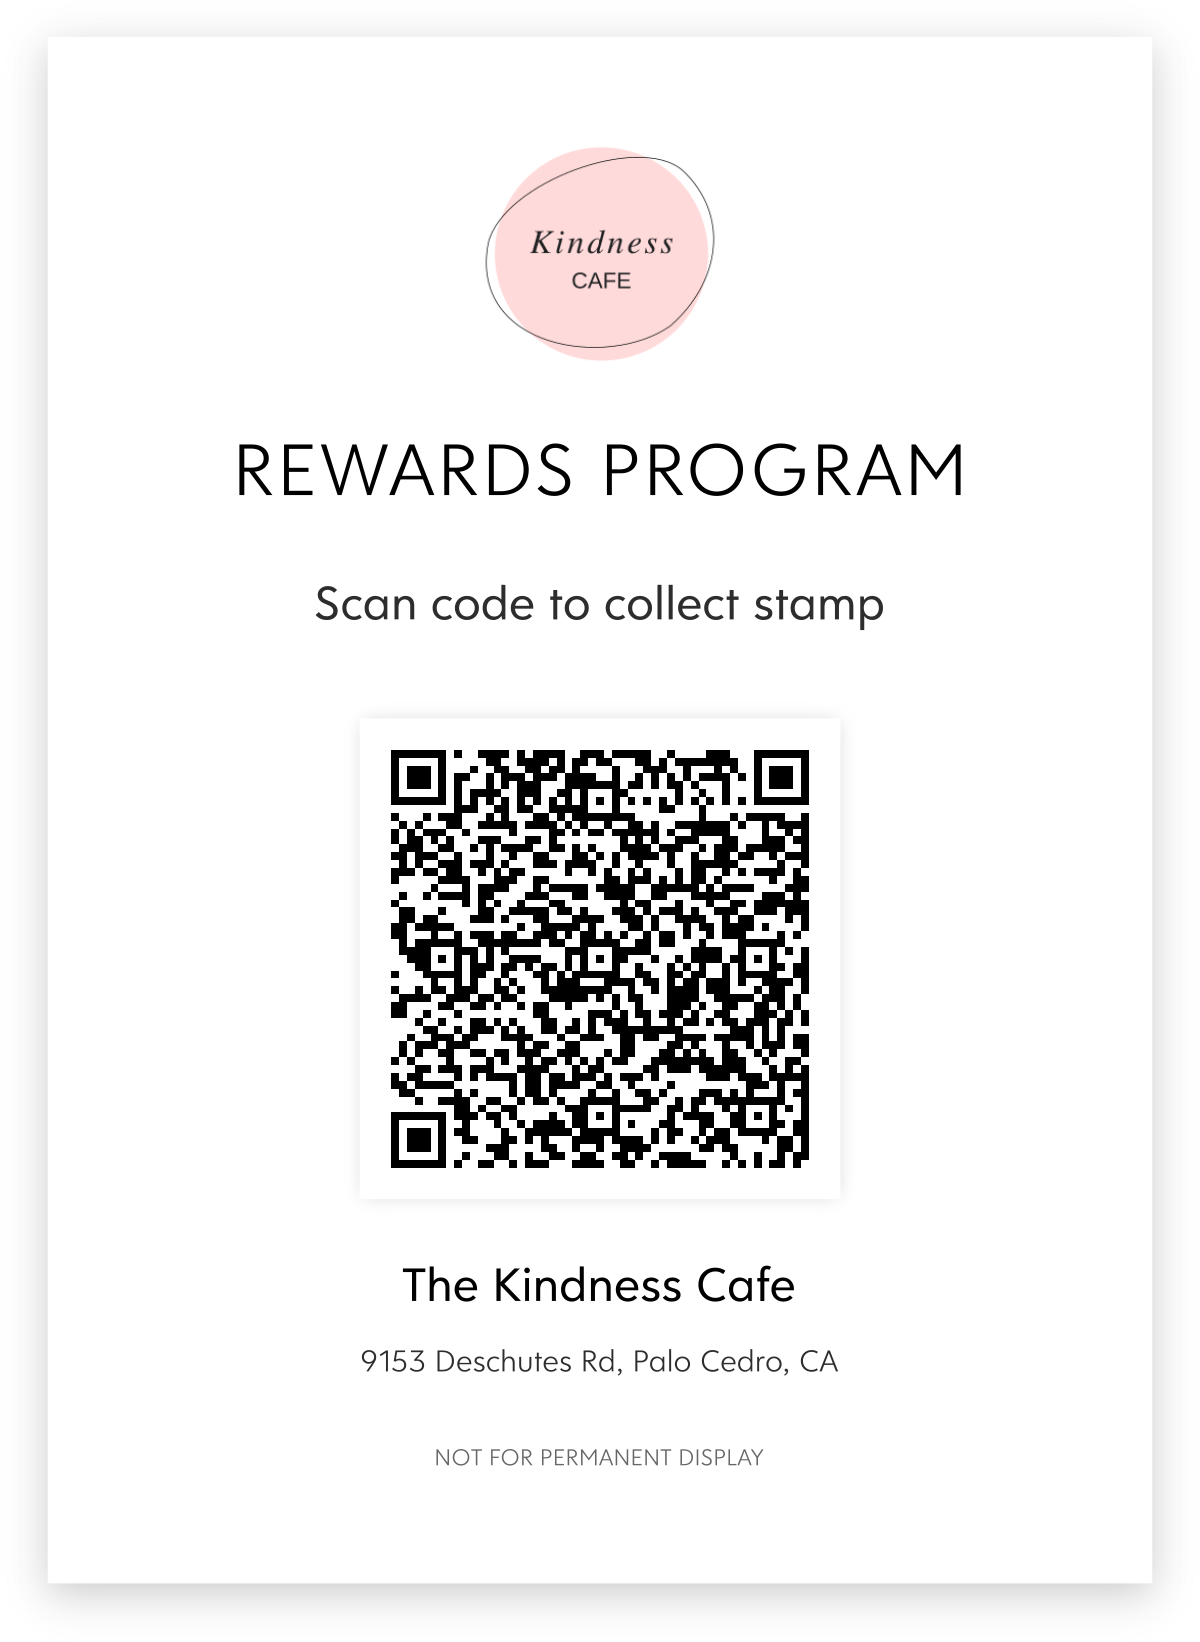 kindness cafe add stamp qr code